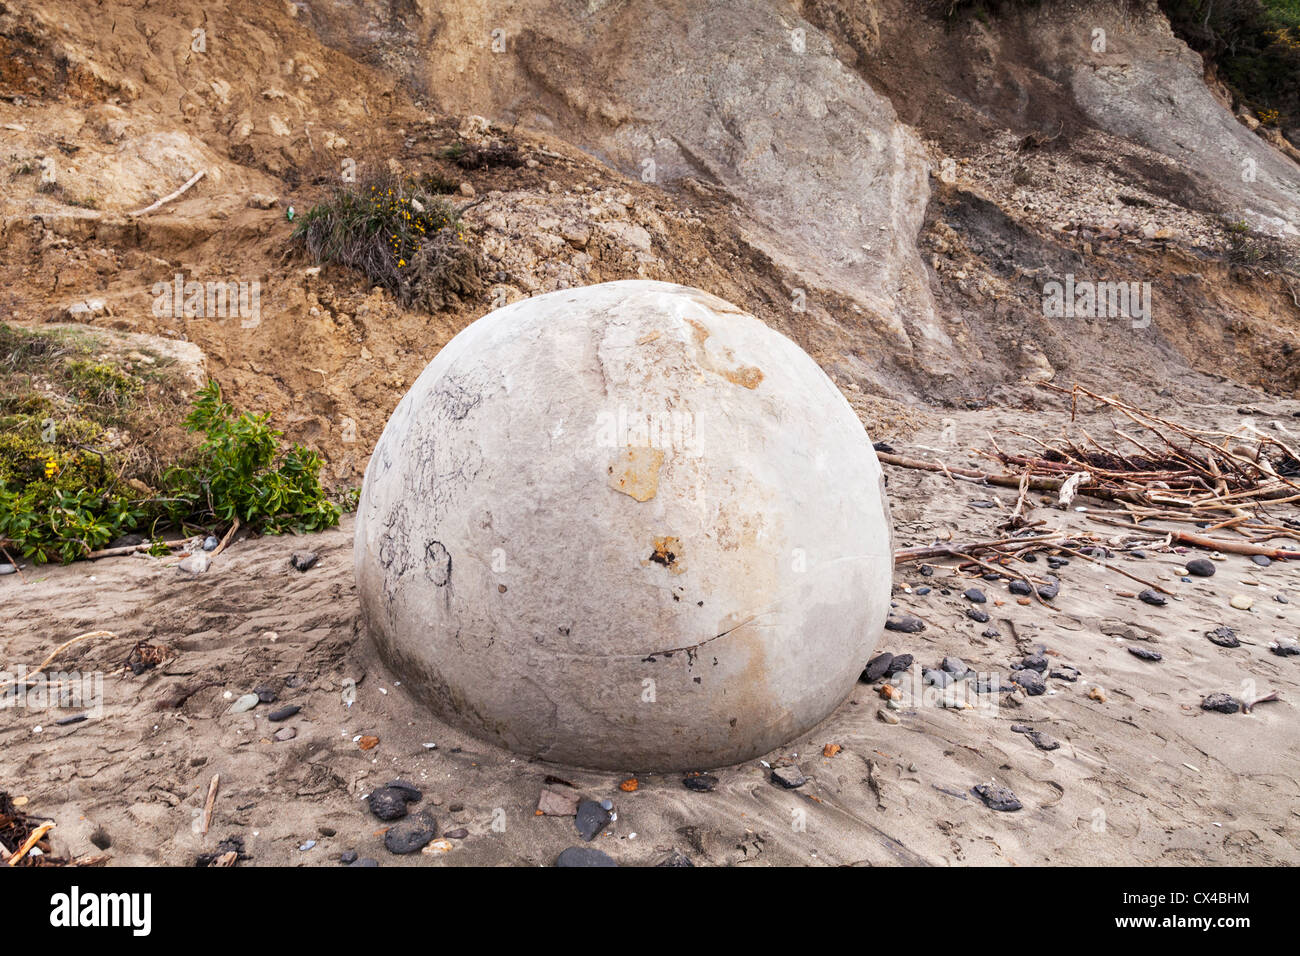 Una roca bastante nuevo o concreción en la playa de Moeraki, antes de que la erosión elimina su superficie. Otago, Nueva Zelanda. Foto de stock